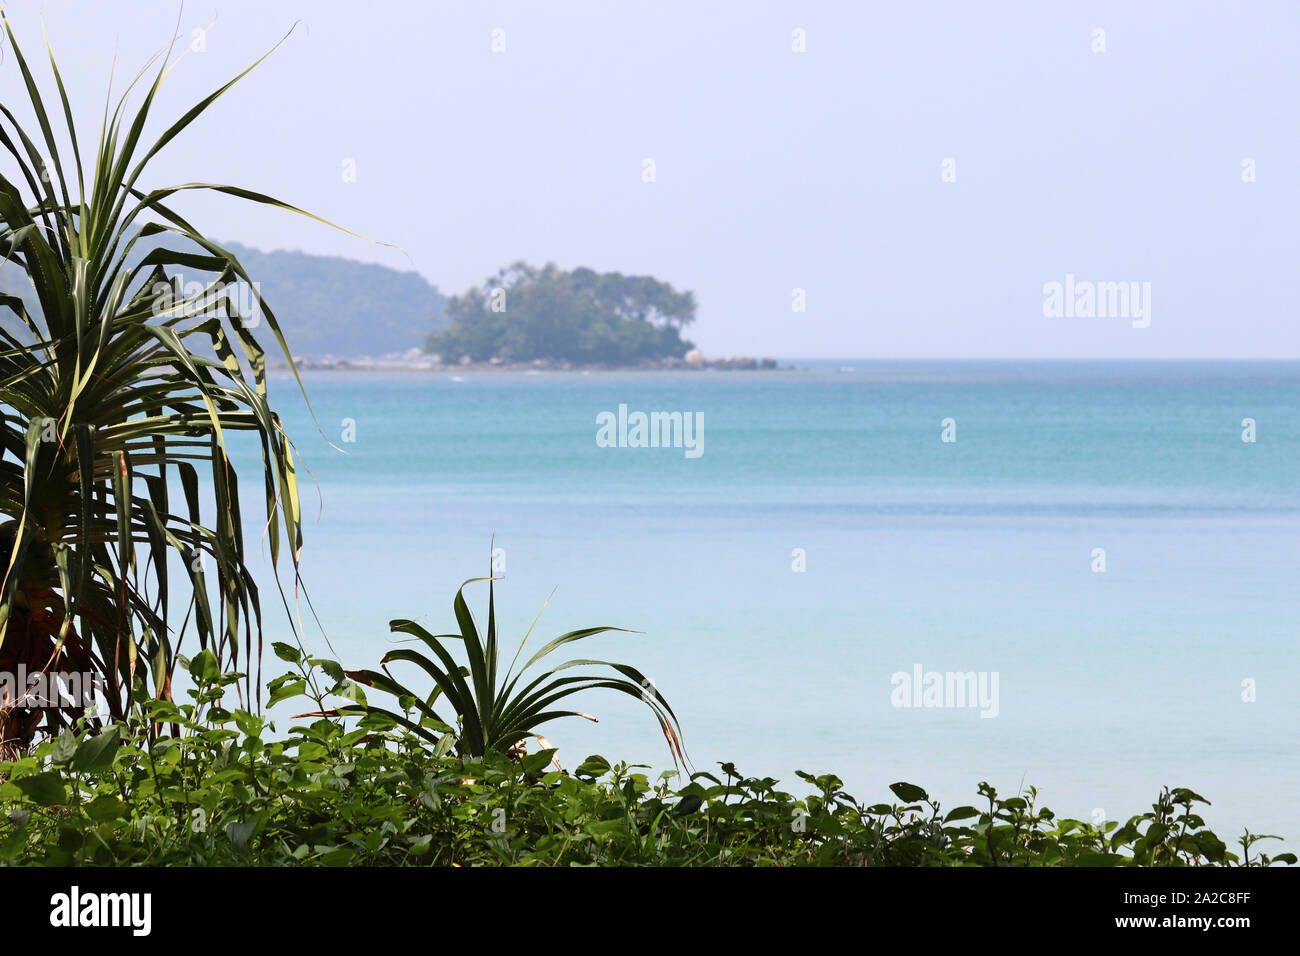 Tropical beach, vue sur la mer bleu et vert îles par le biais de feuilles de palmier, selective focus. Paradise nature background Banque D'Images